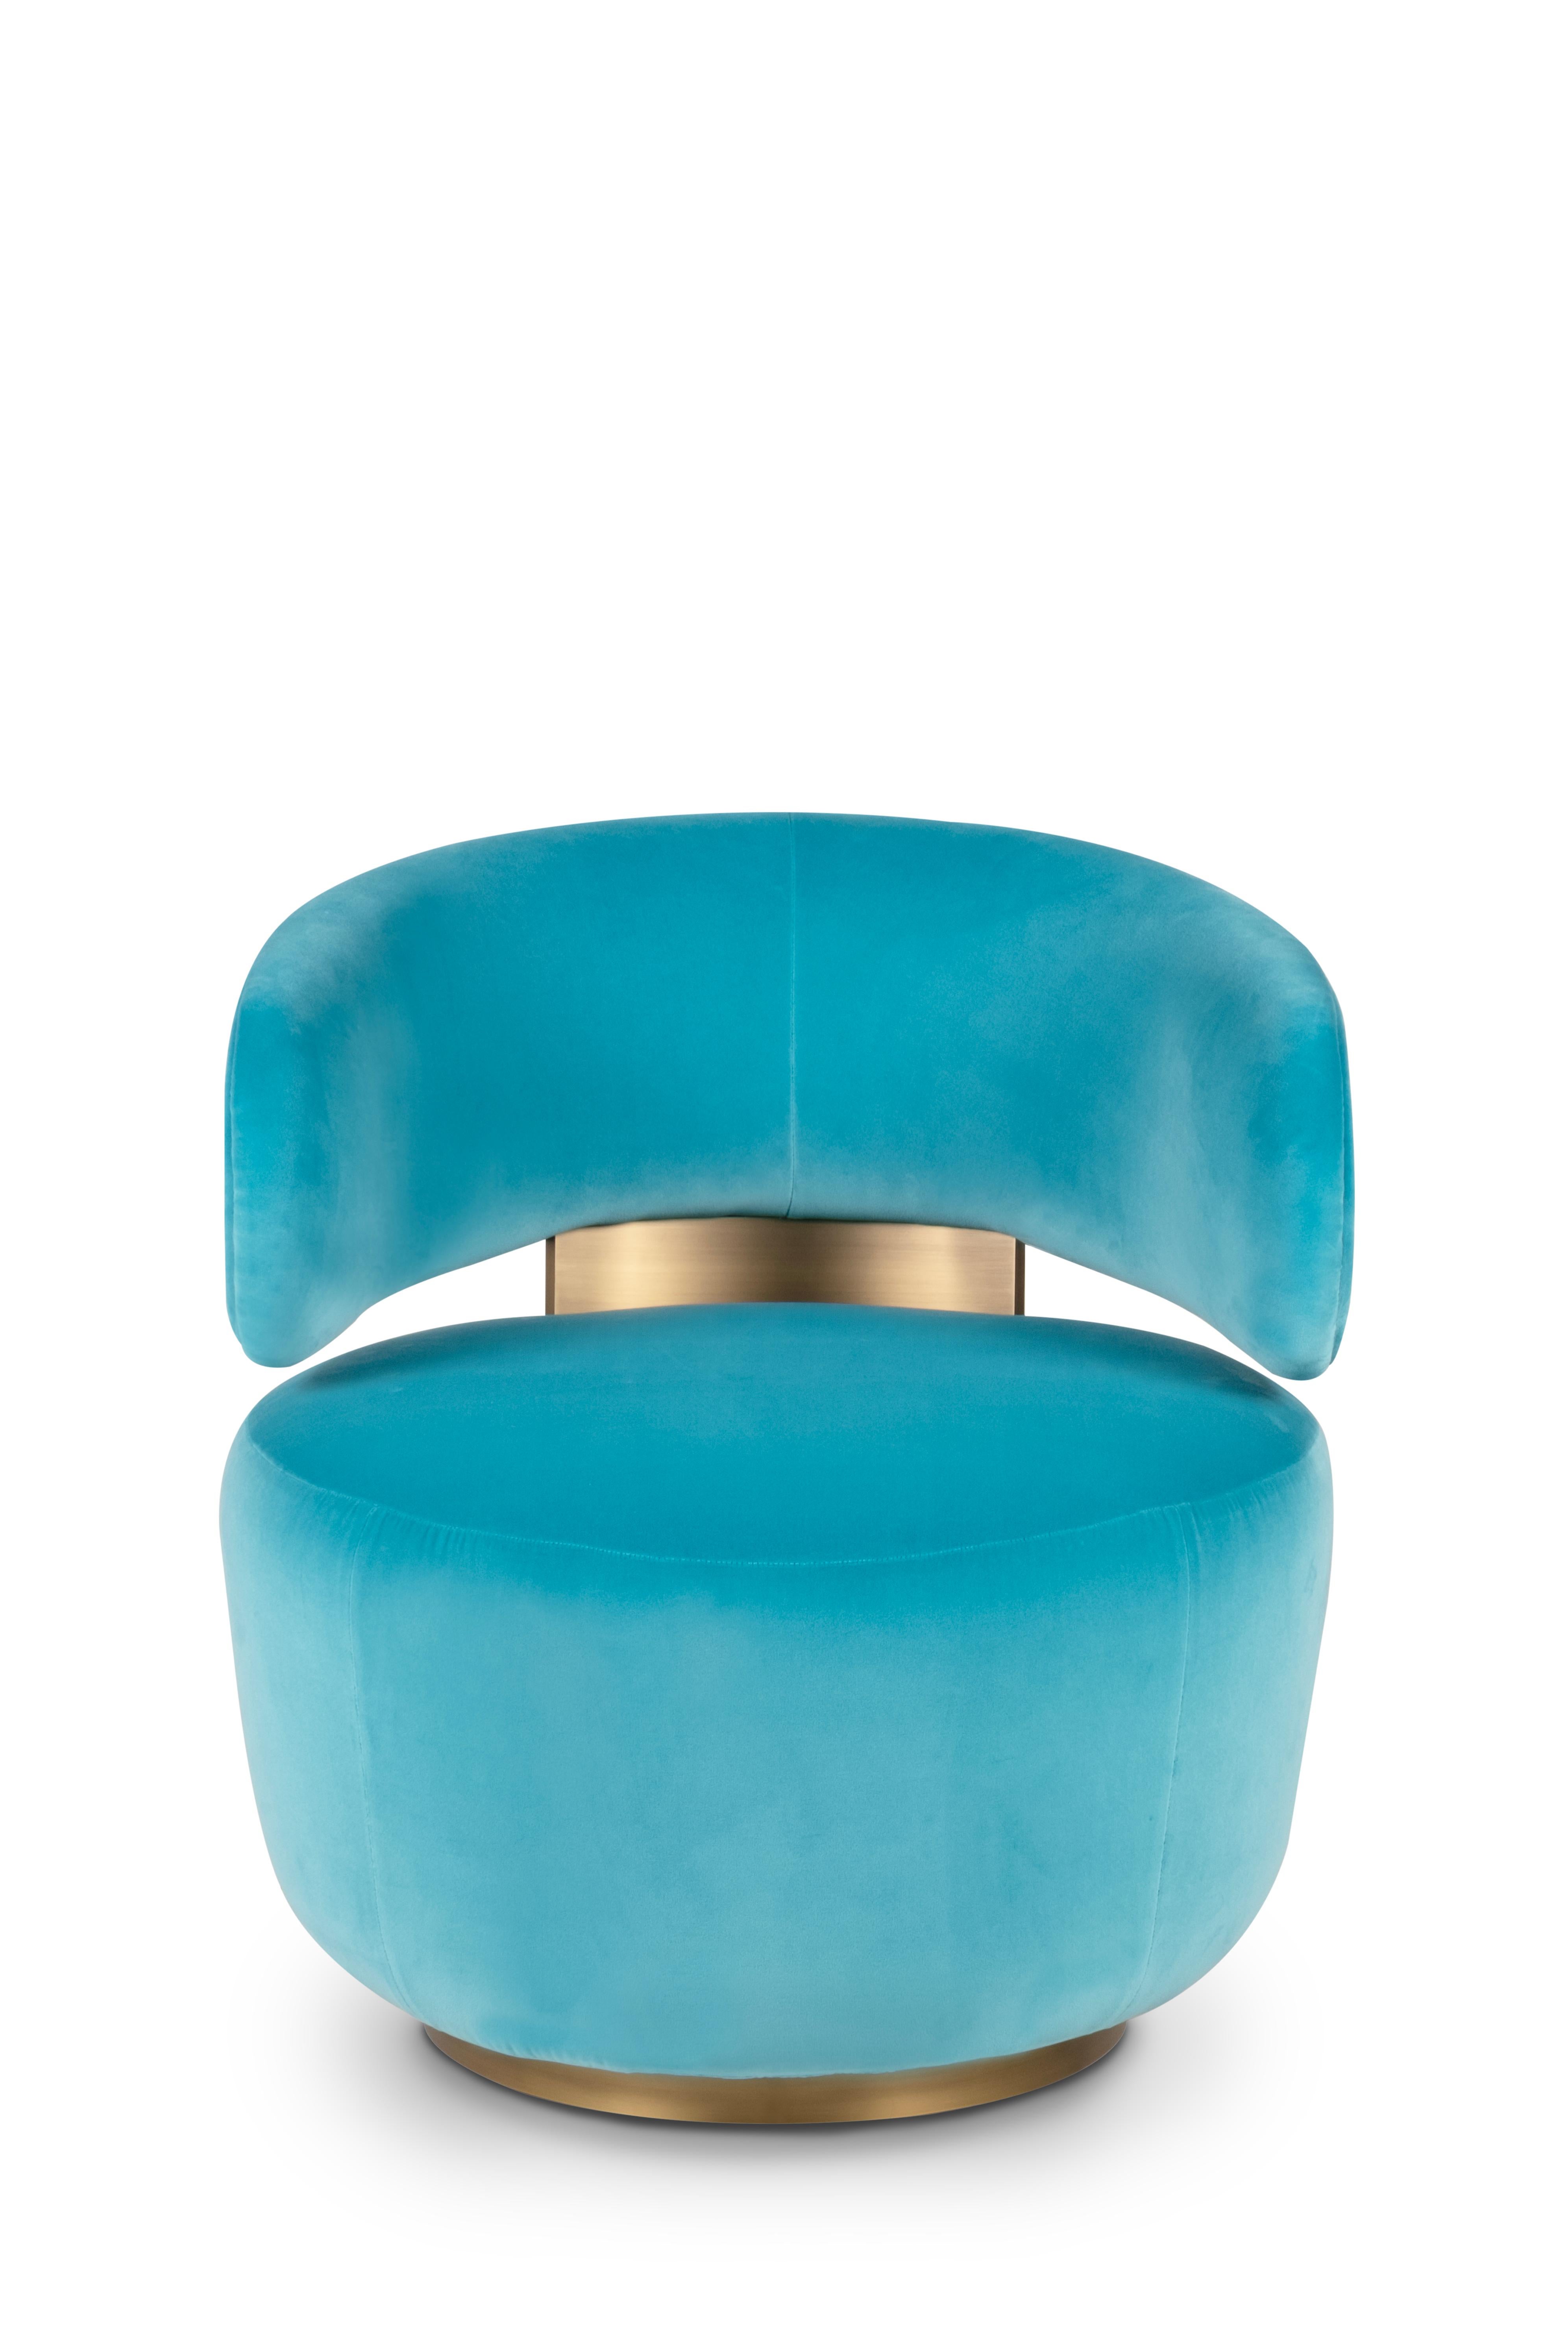 Caju Swivel Lounge Chair, Contemporary Collection, Handcrafted in Portugal - Europe by Greenapple.

La chaise longue Caju est un meuble tendance qui personnifie la forme organique d'un cajou. Tapissé de velours turquoise, le design de la chaise